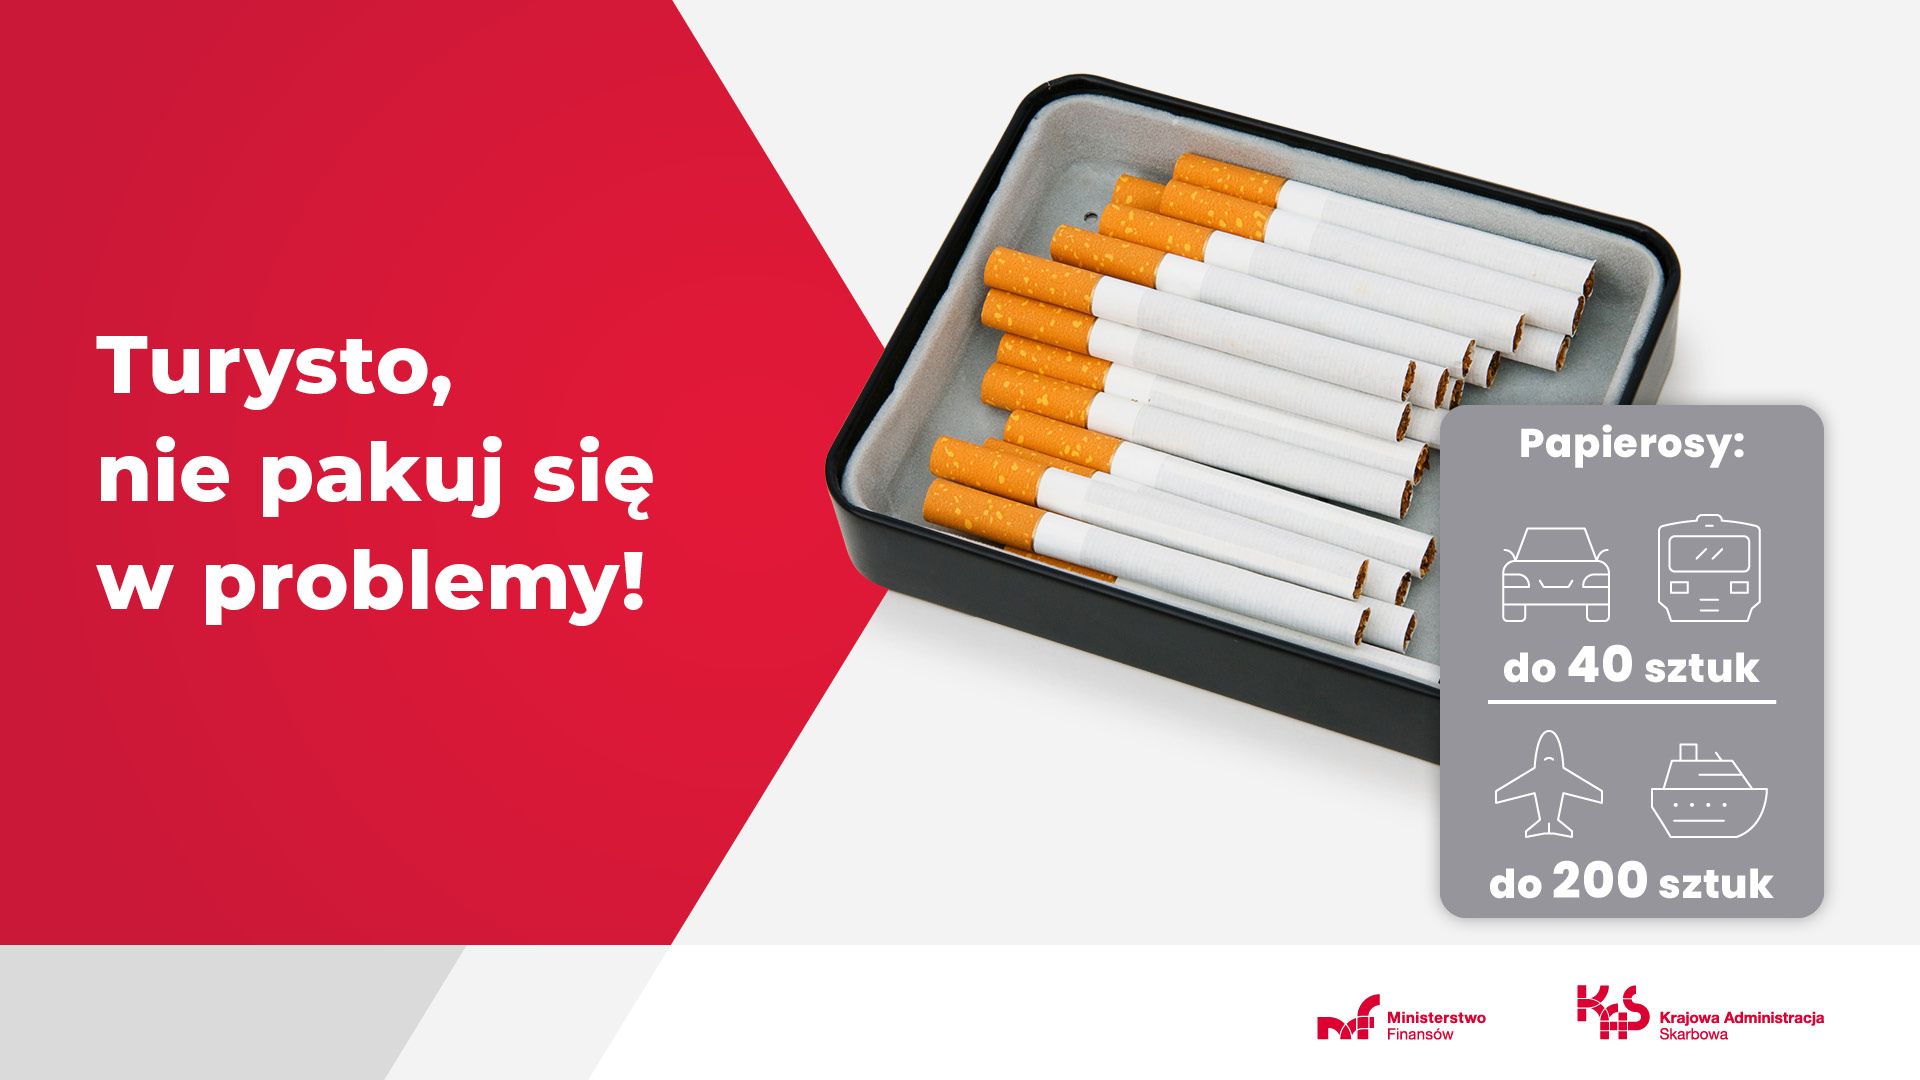 Napis Turysto, nie pakuj się w problemy! Zdjęcie papierosów. Papierosy do 40 sztuk samochodem lub pociągiem; do 200 sztuk samolotem lub statkiem